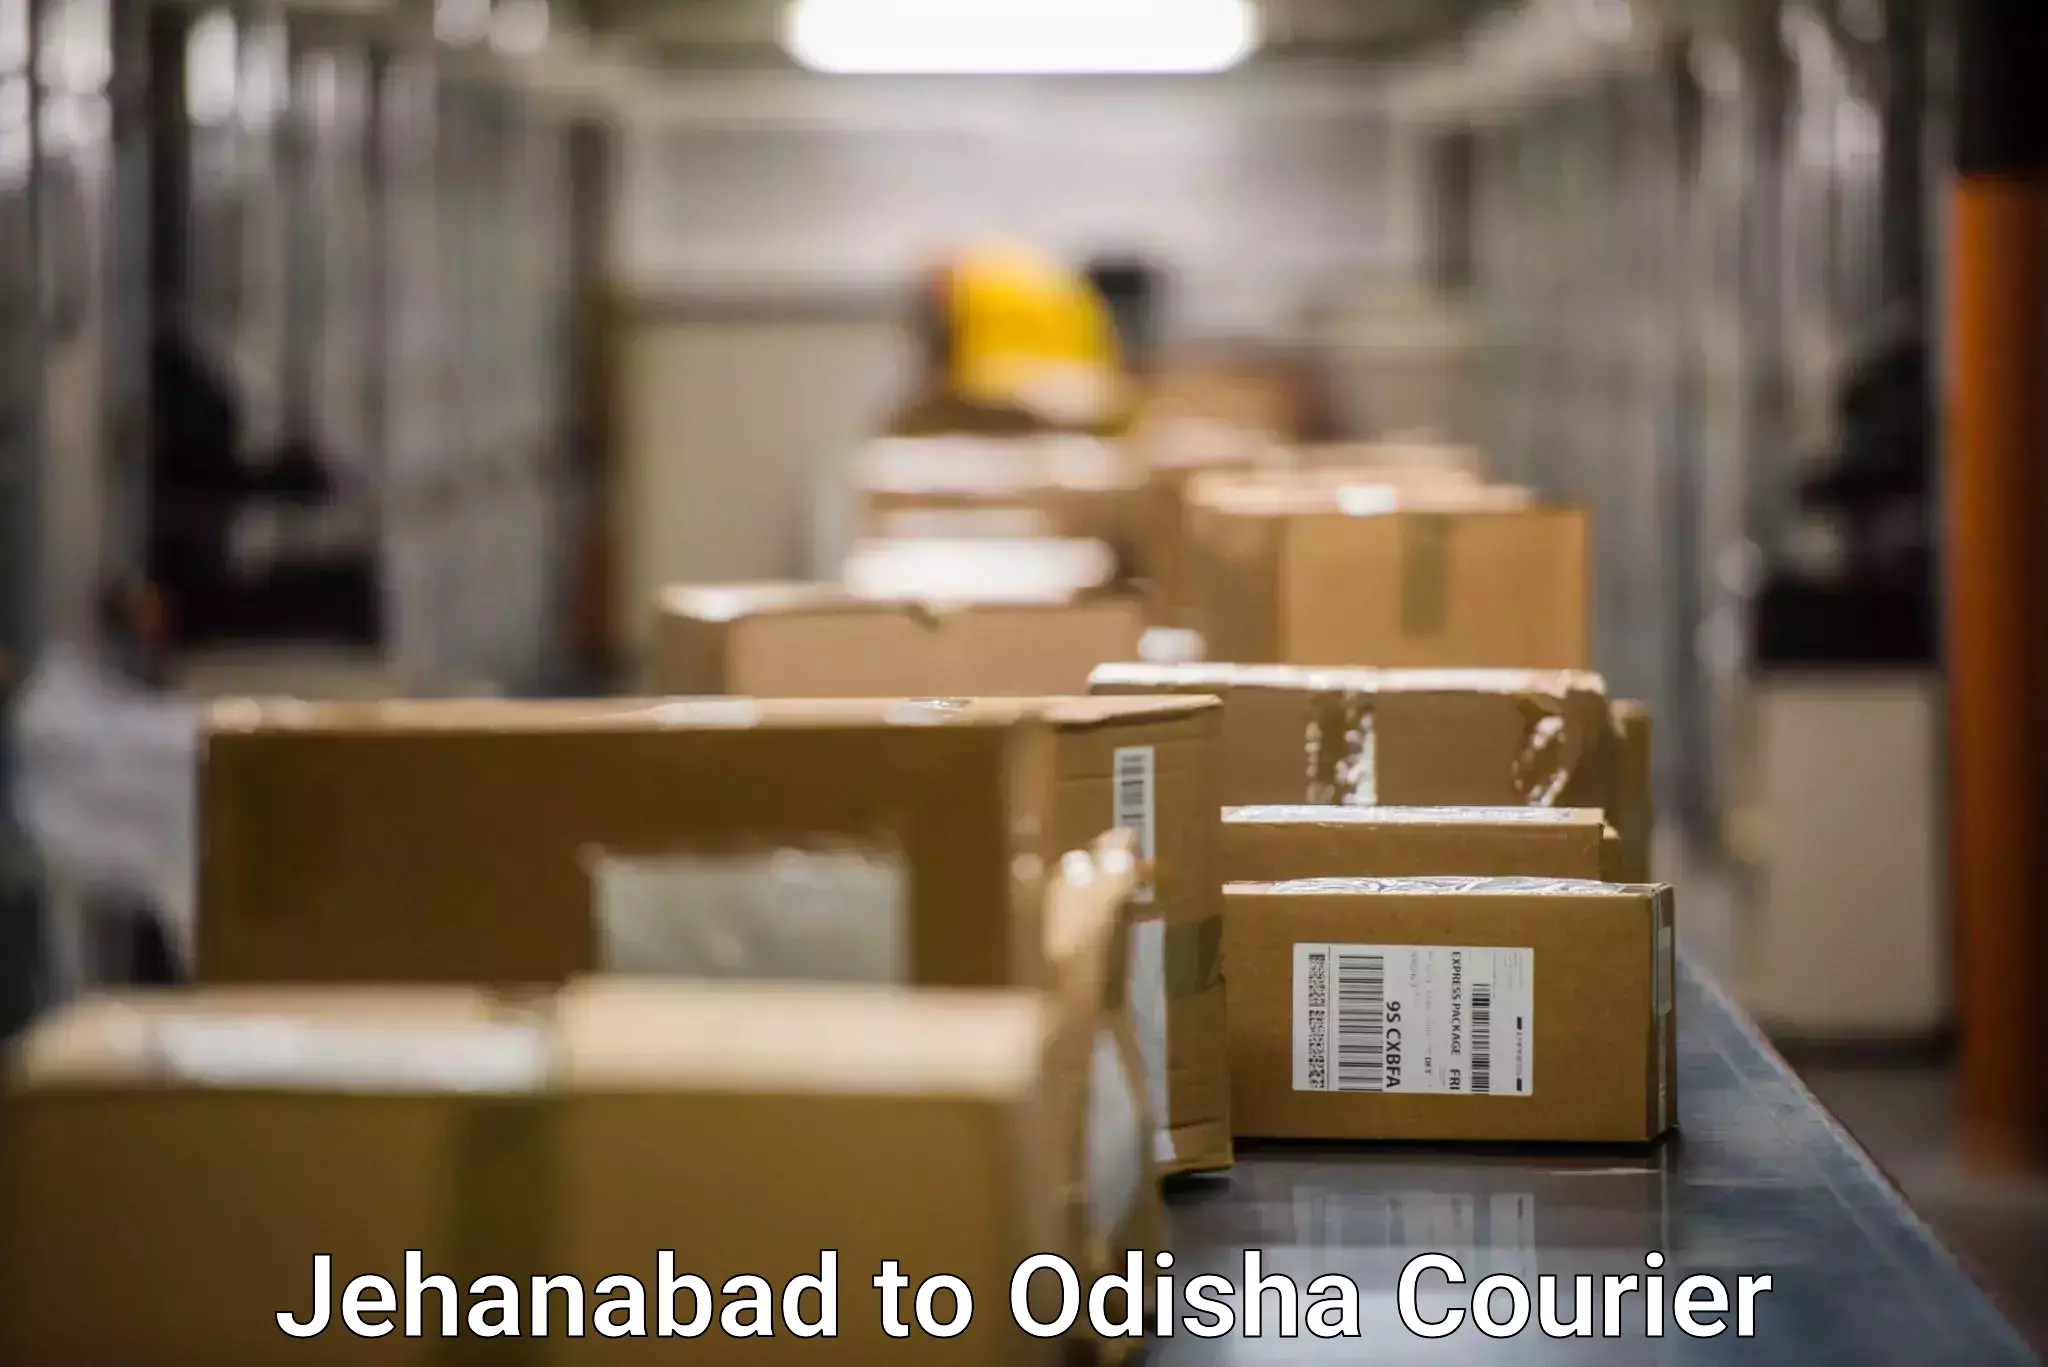 Courier service innovation Jehanabad to Odisha